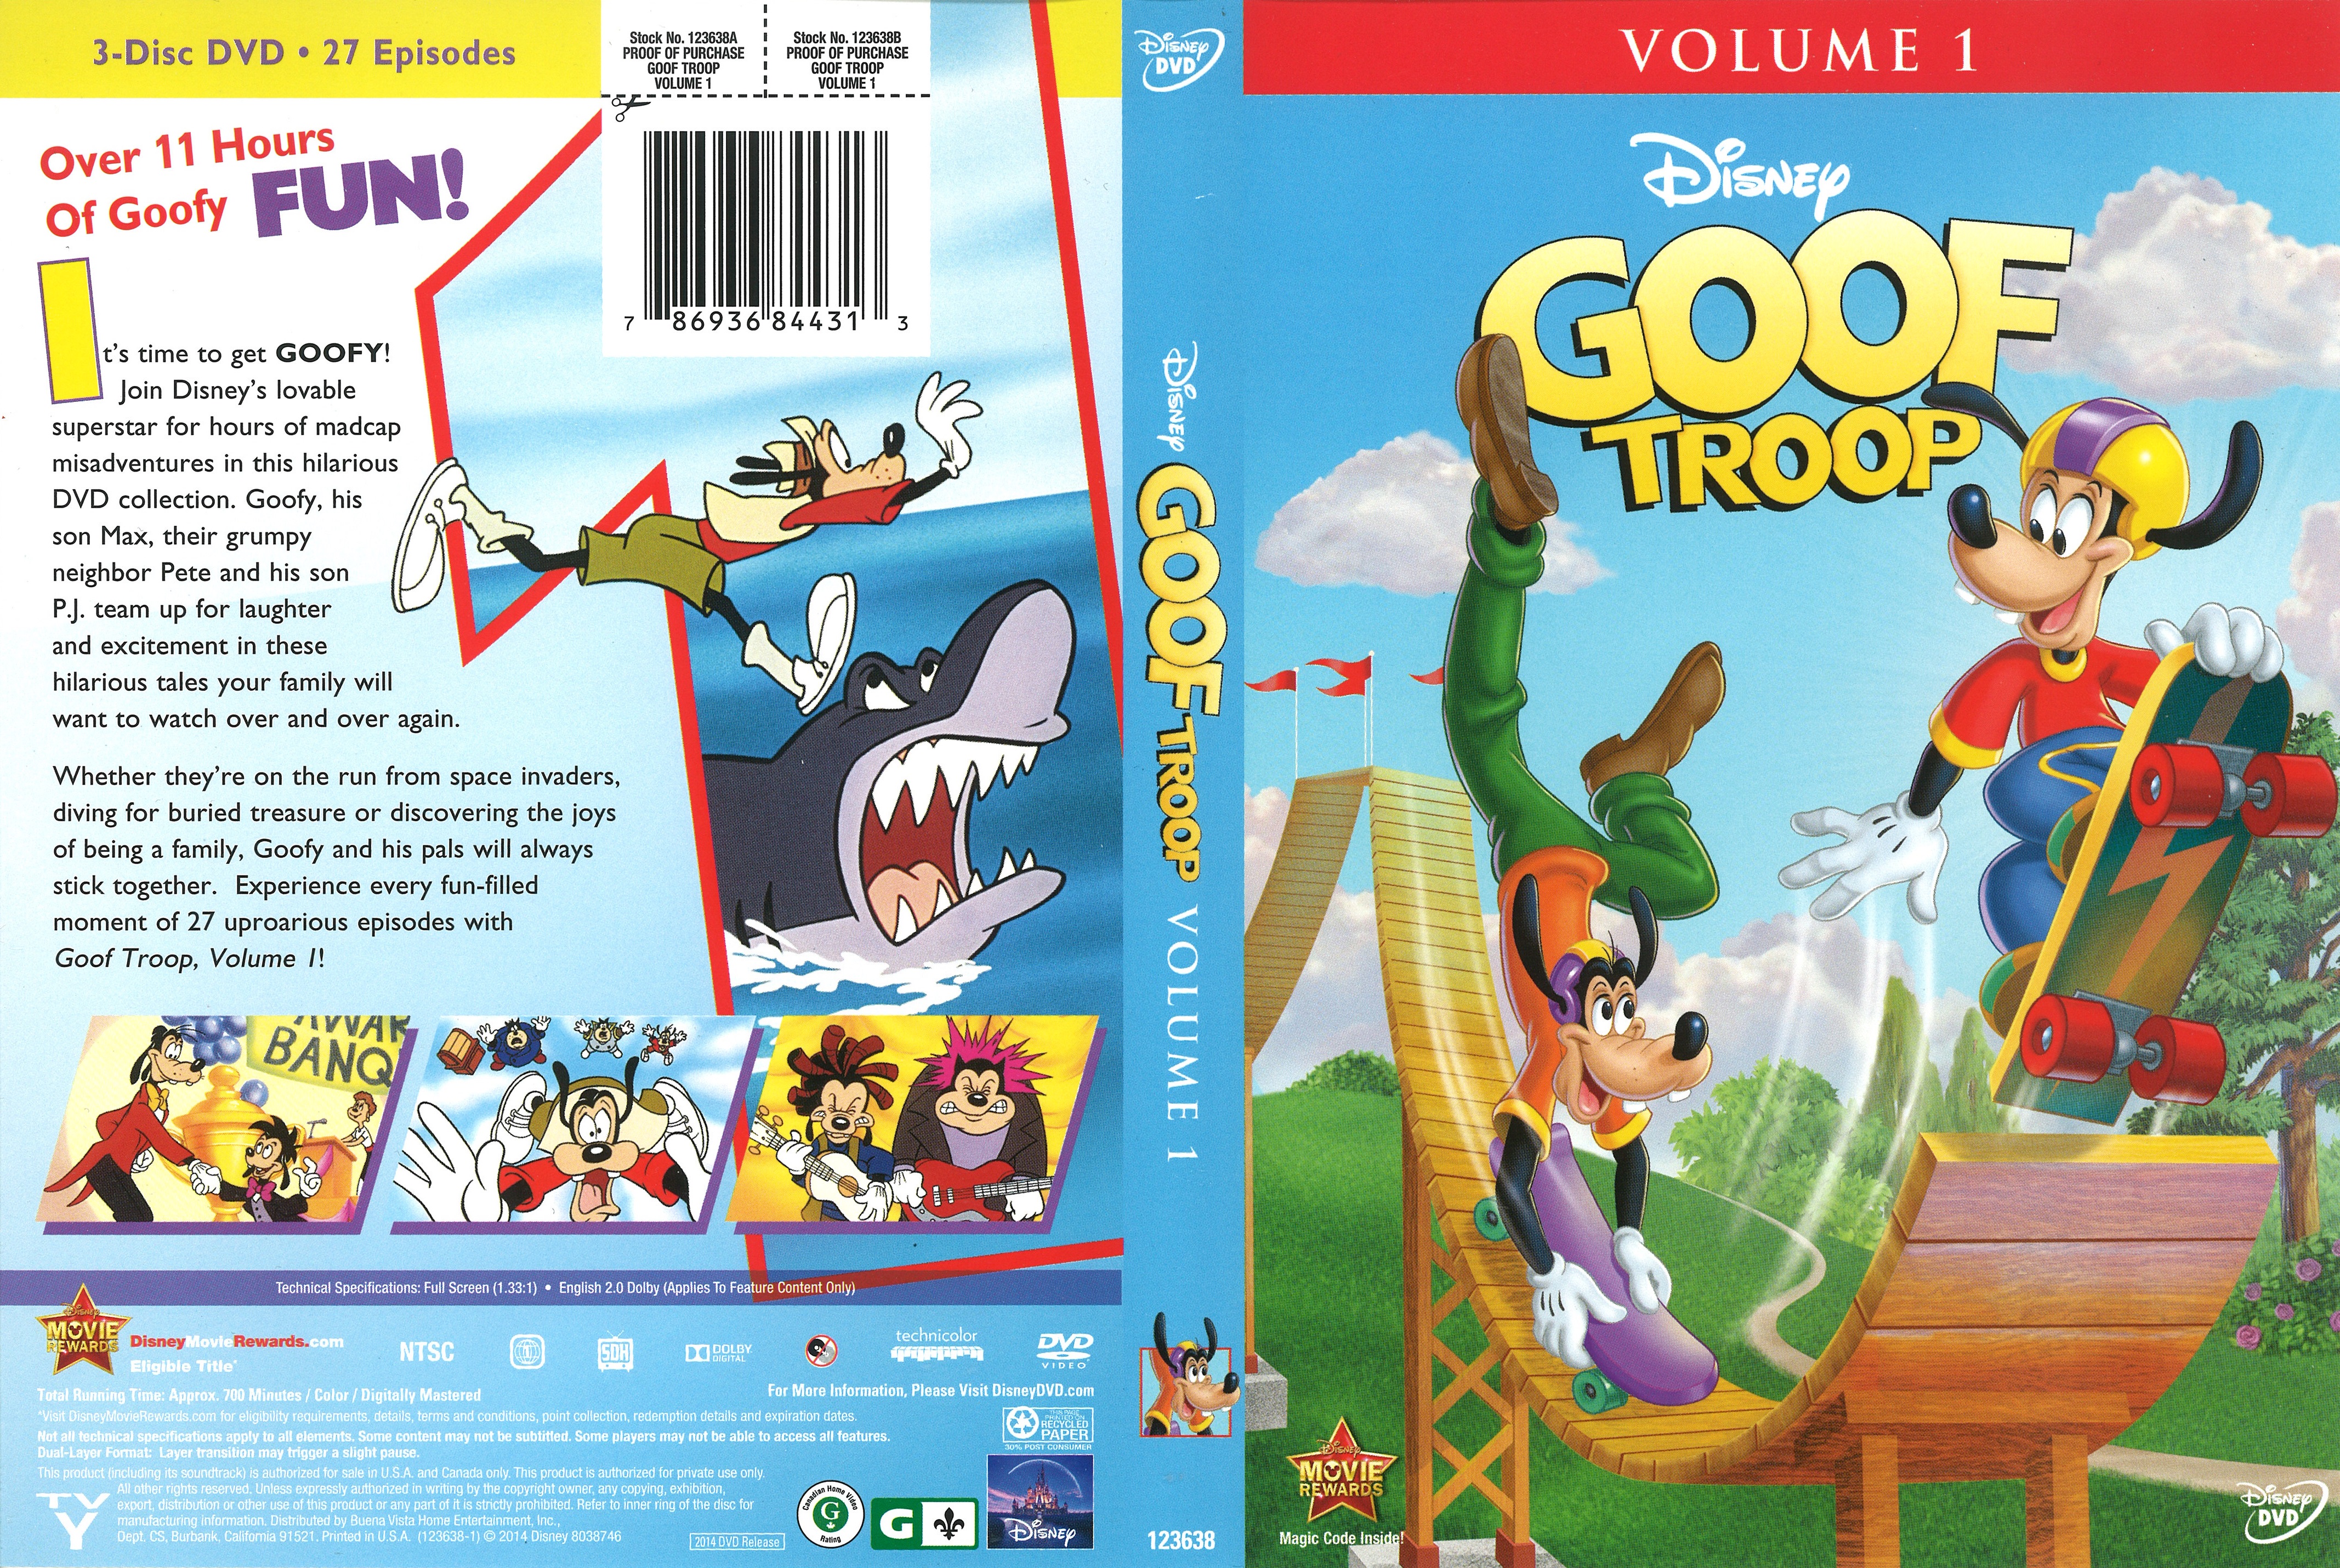 Goof Troop Volume 1 R1 DVD Cover.jpg.